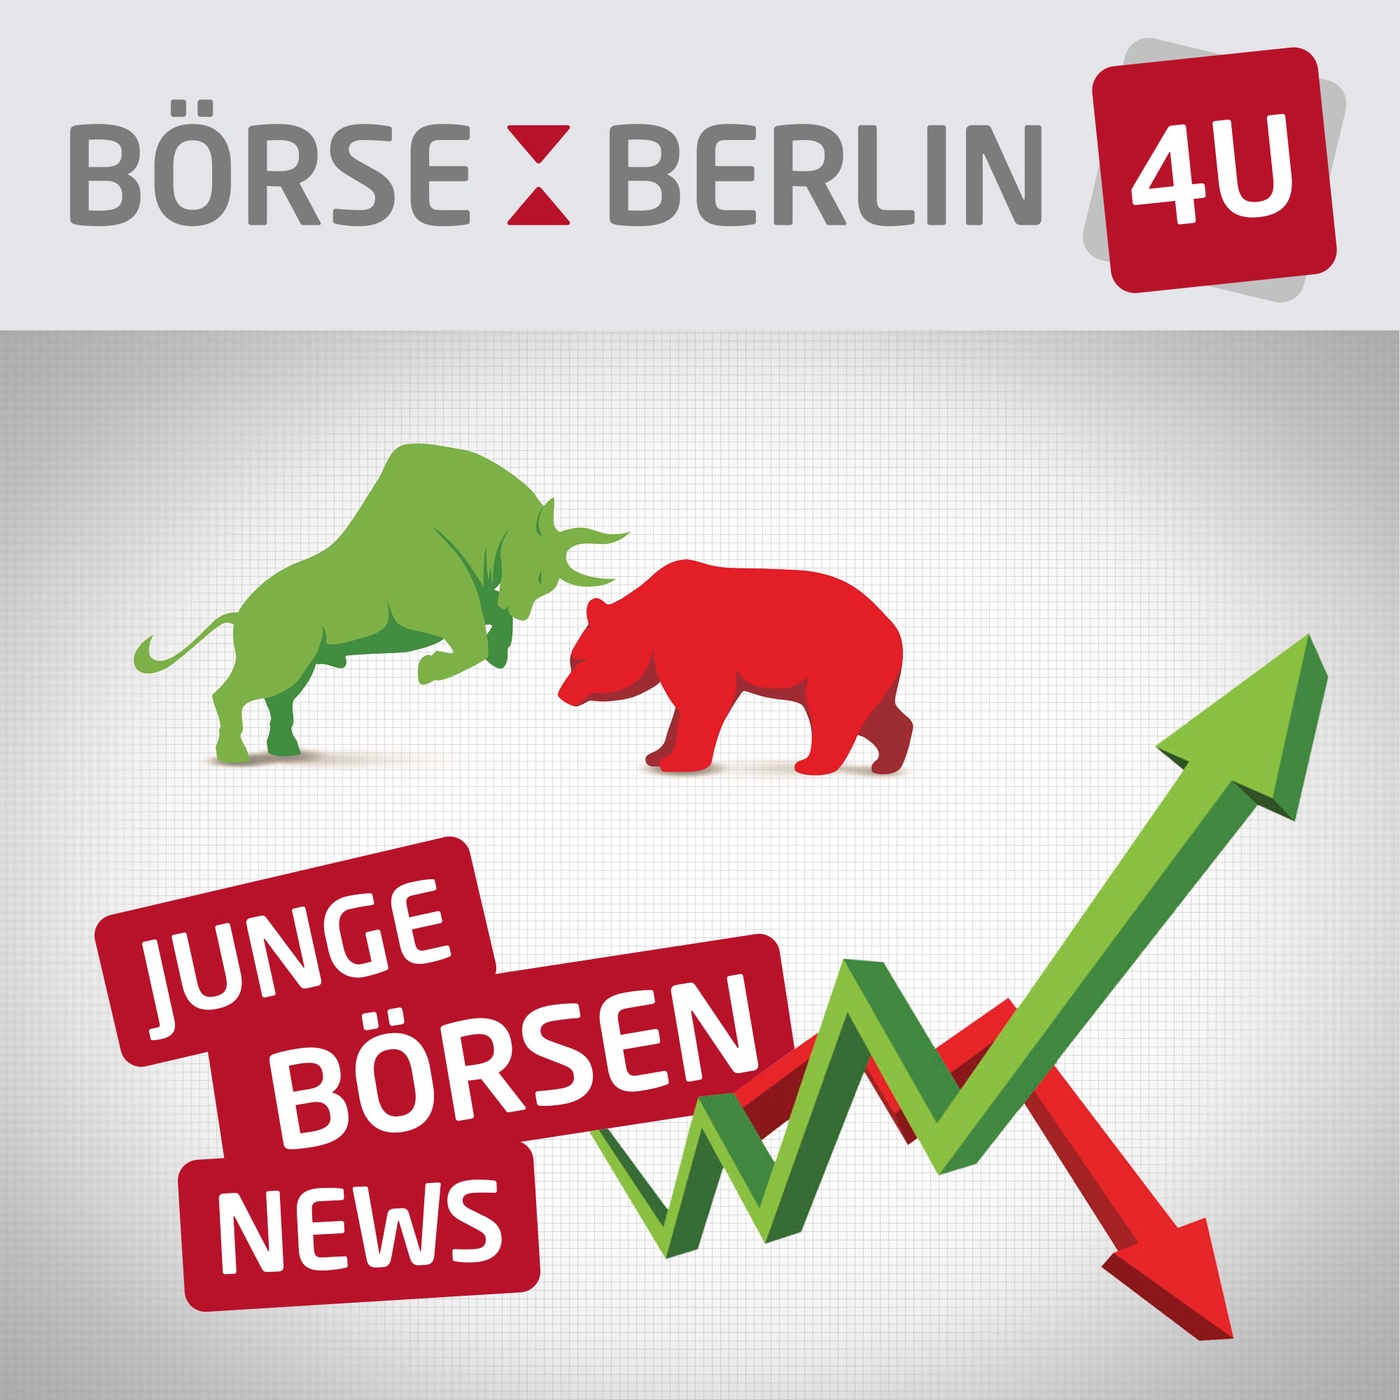 Börse Berlin 4U Podcast: Börse ist kein Spiel, sondern Handwerk